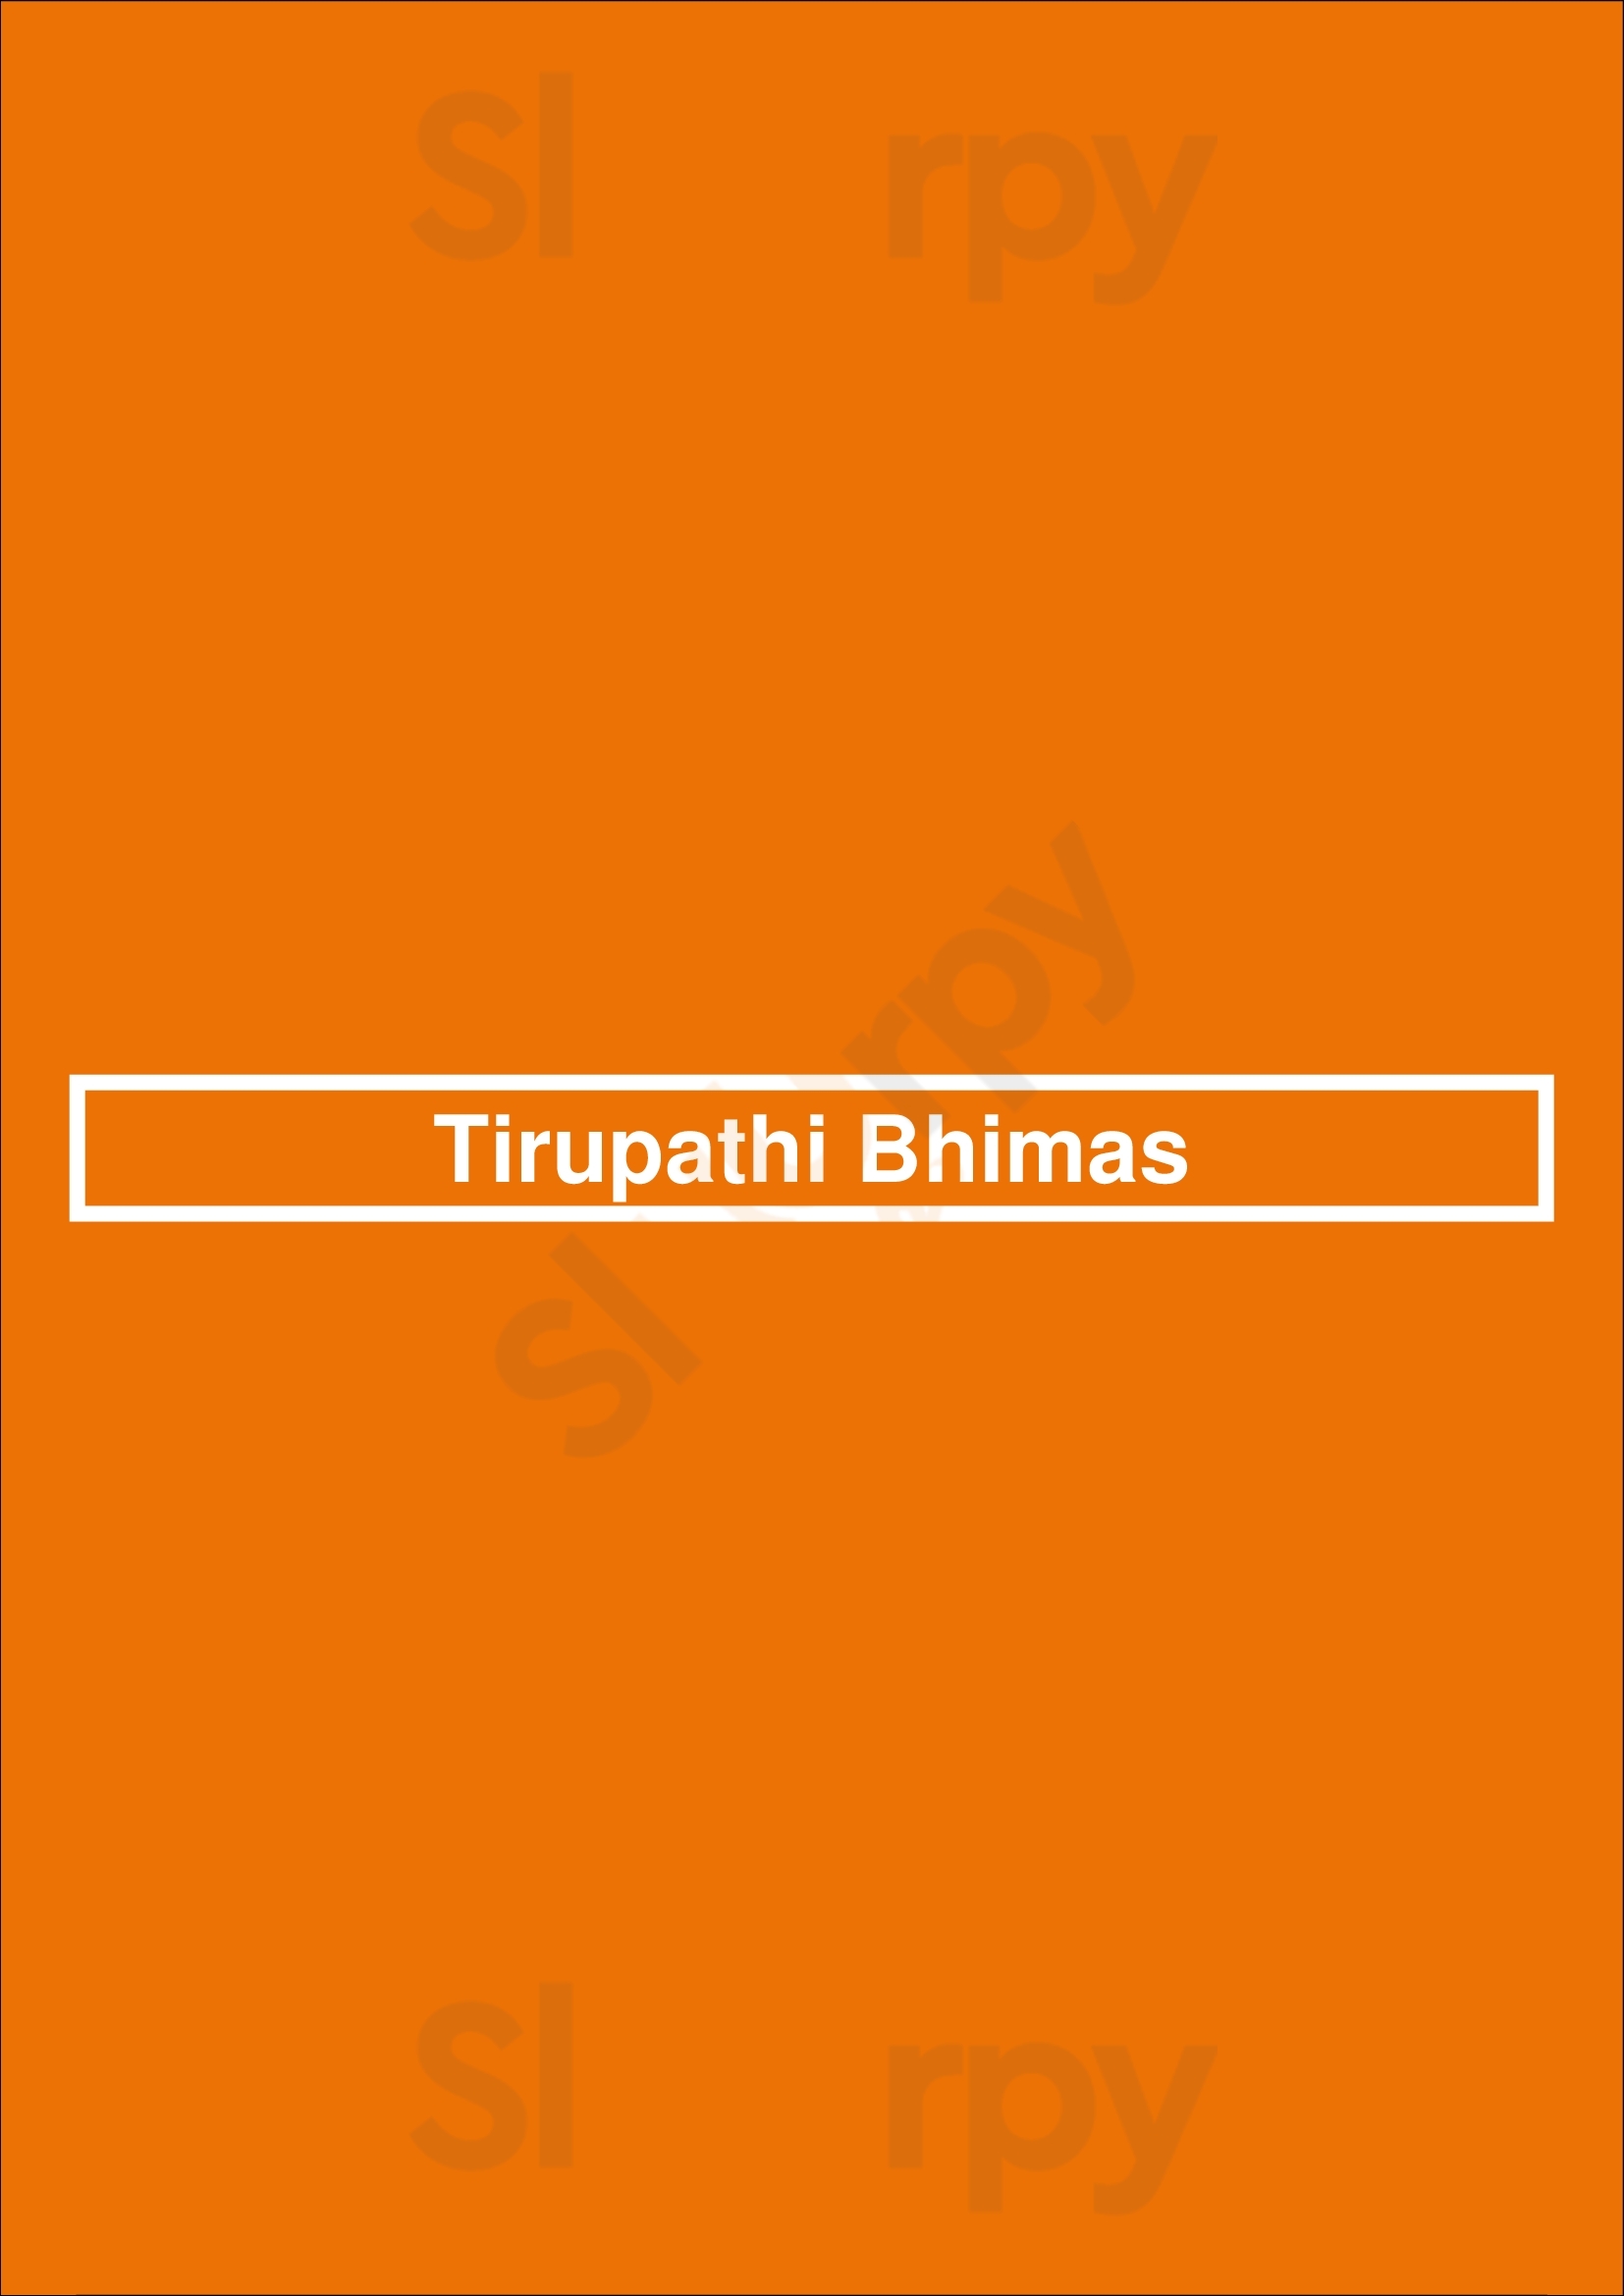 Tirupathi Bhimas Milpitas Menu - 1